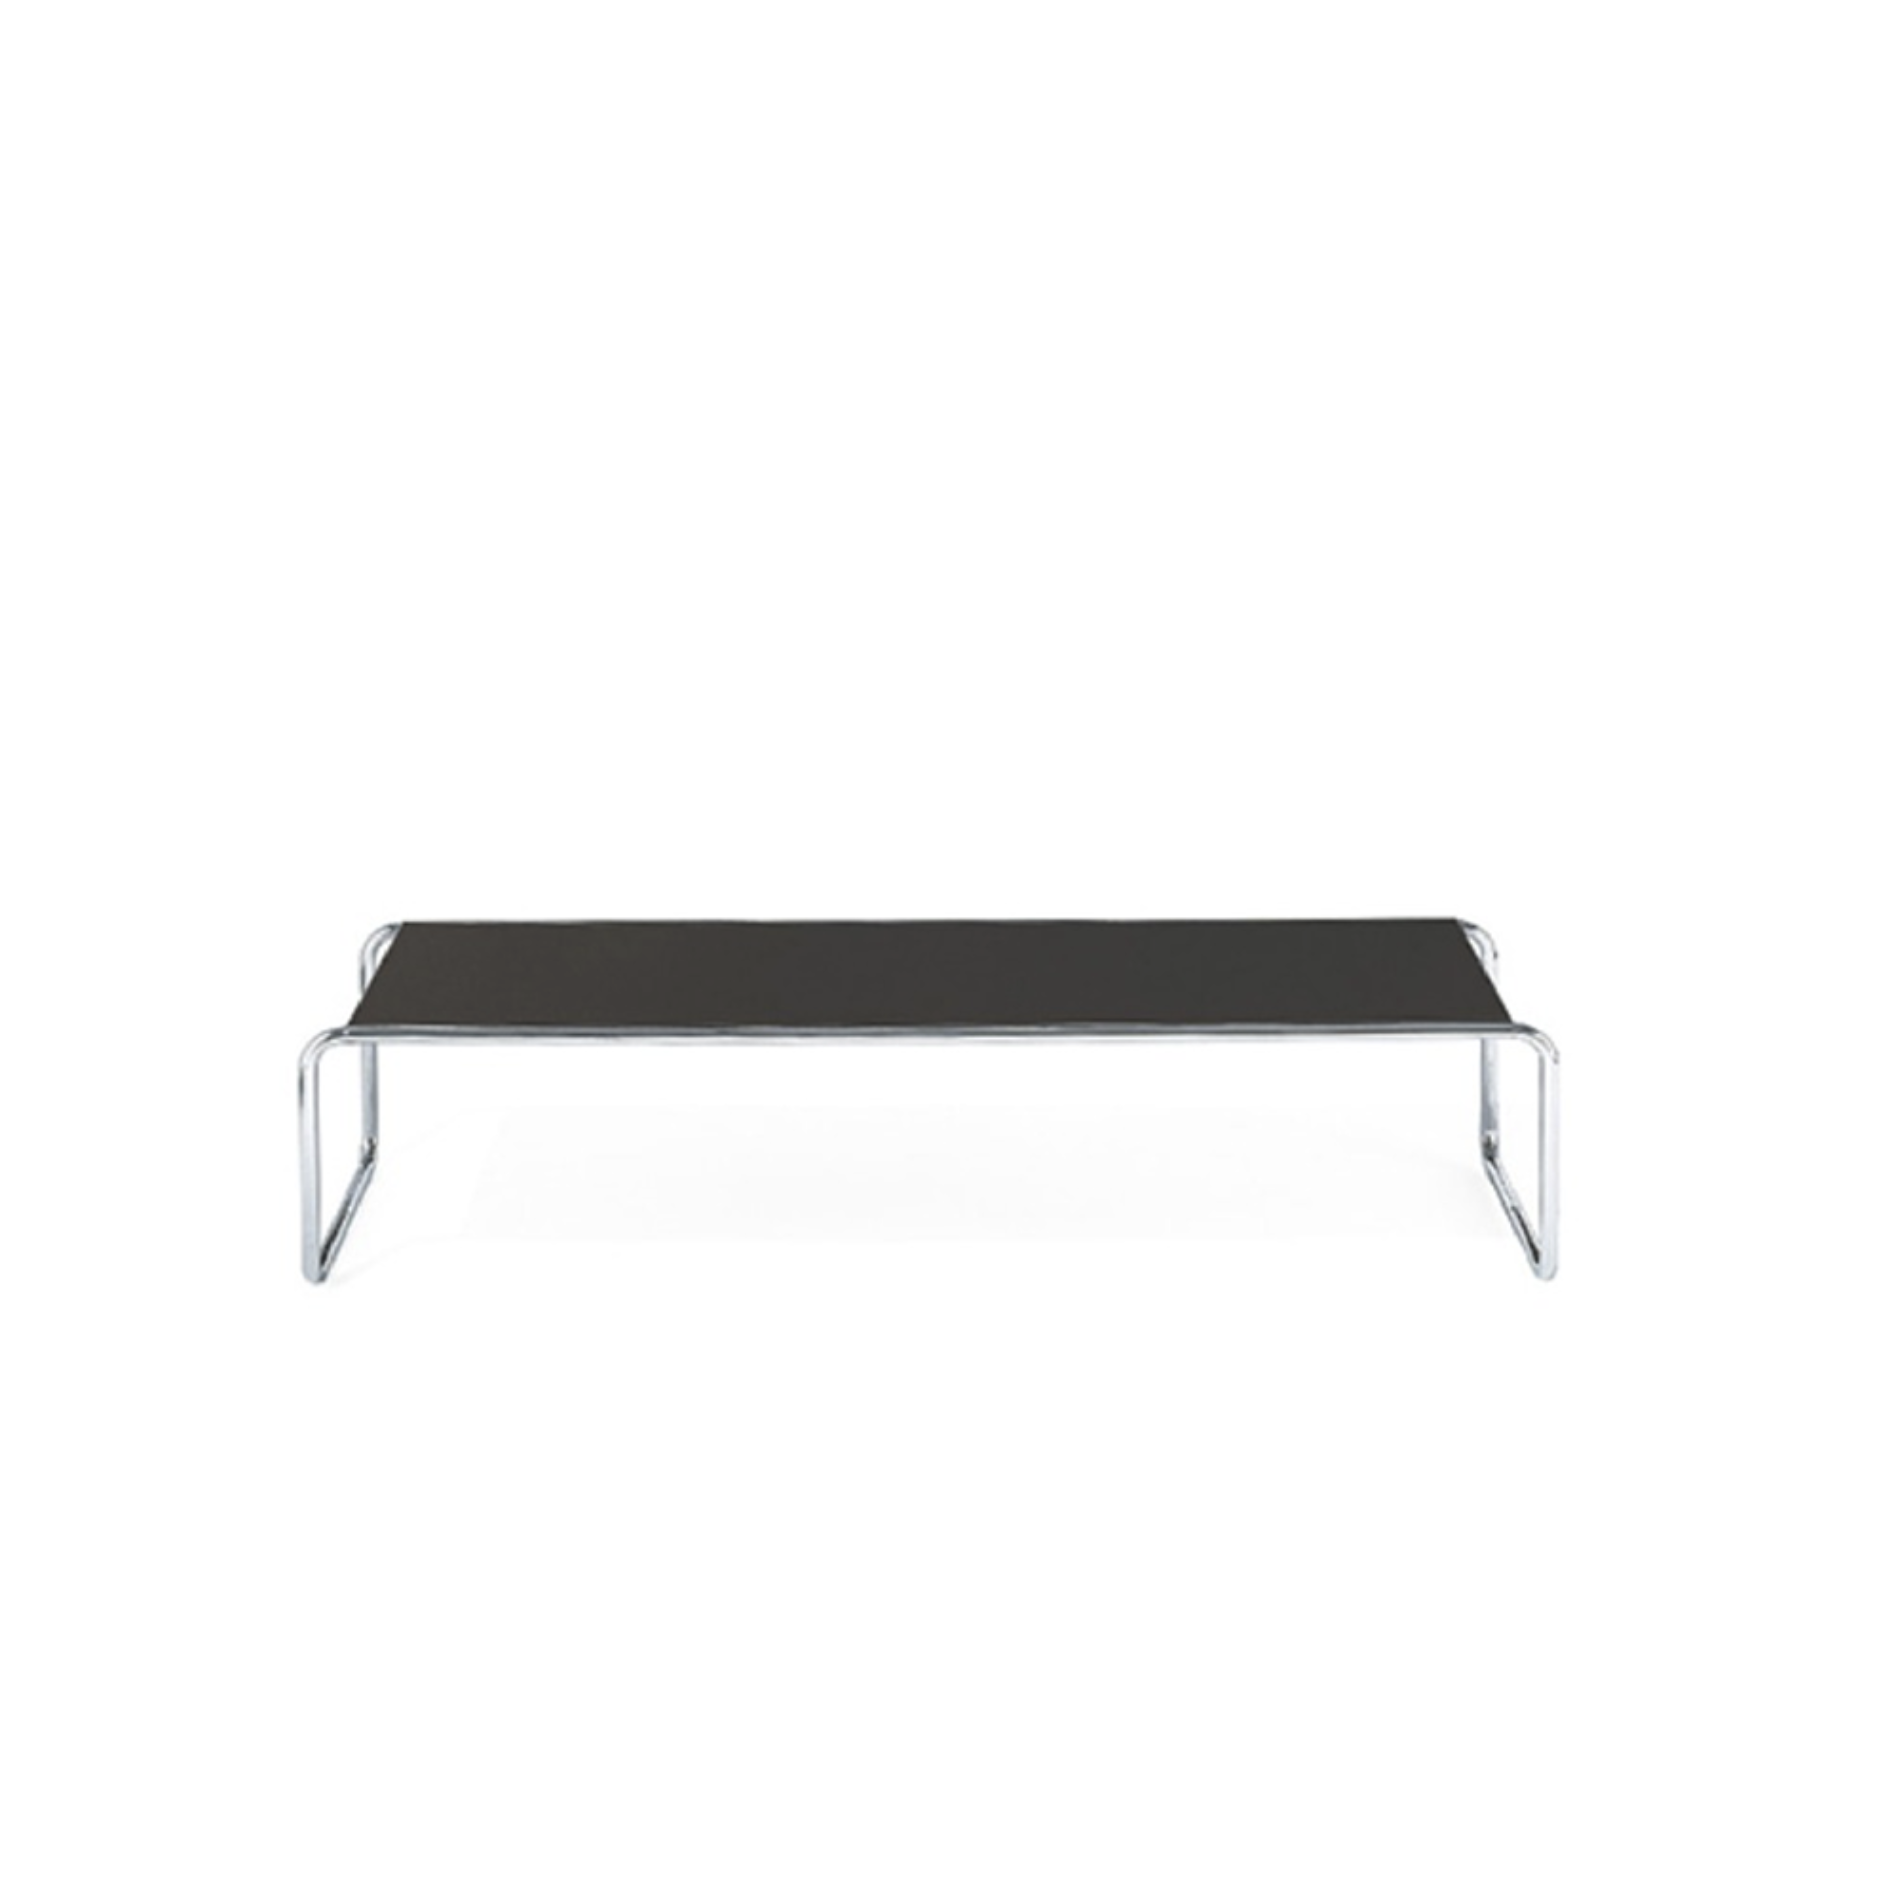 TECTA K1C Oblique Couch Table - Black 125Cm